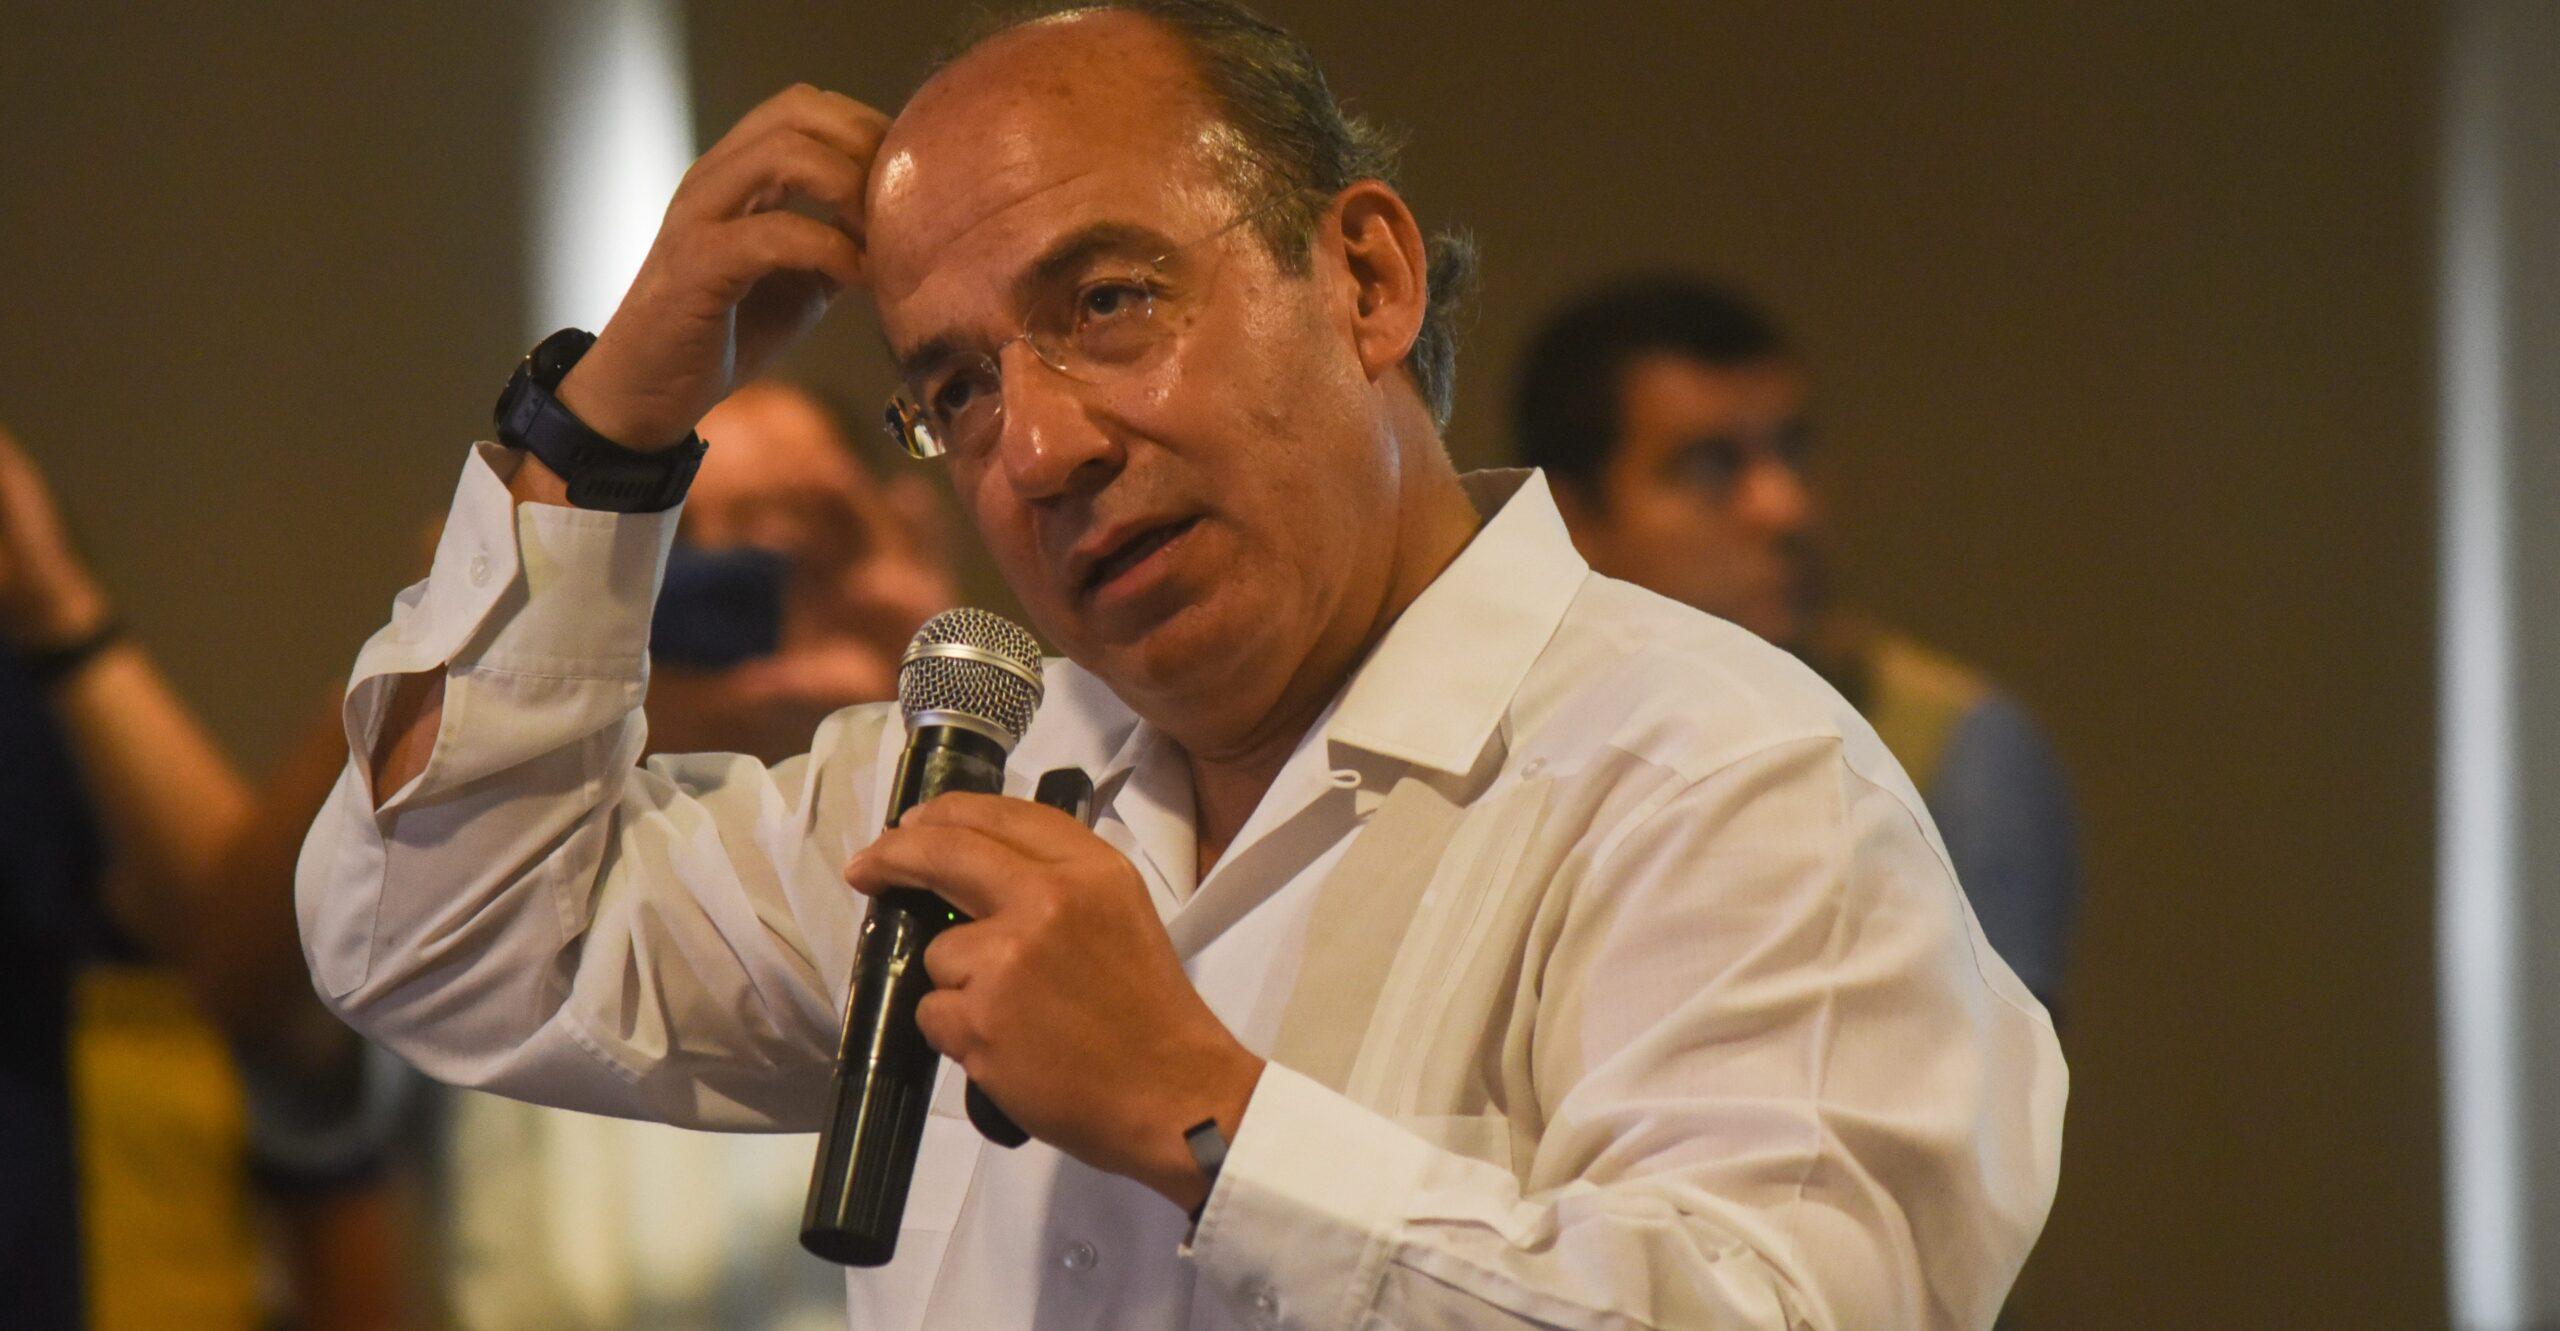 Por fraude en 2006 hay violencia, dice AMLO; Calderón le responde que se ponga a trabajar